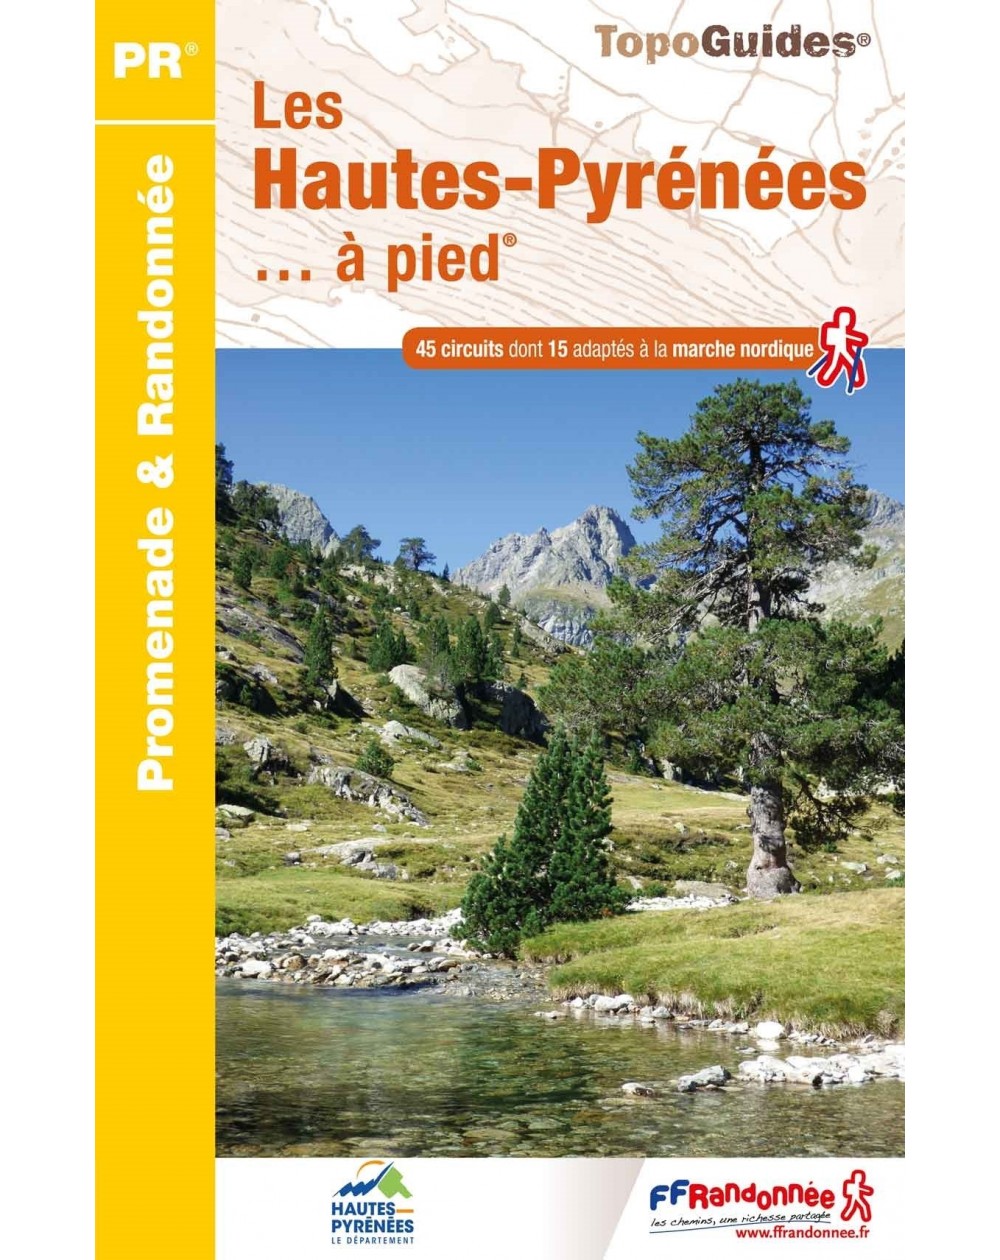 Les Hautes-Pyrénées en 45 circuits de randonnées | Topoguide 